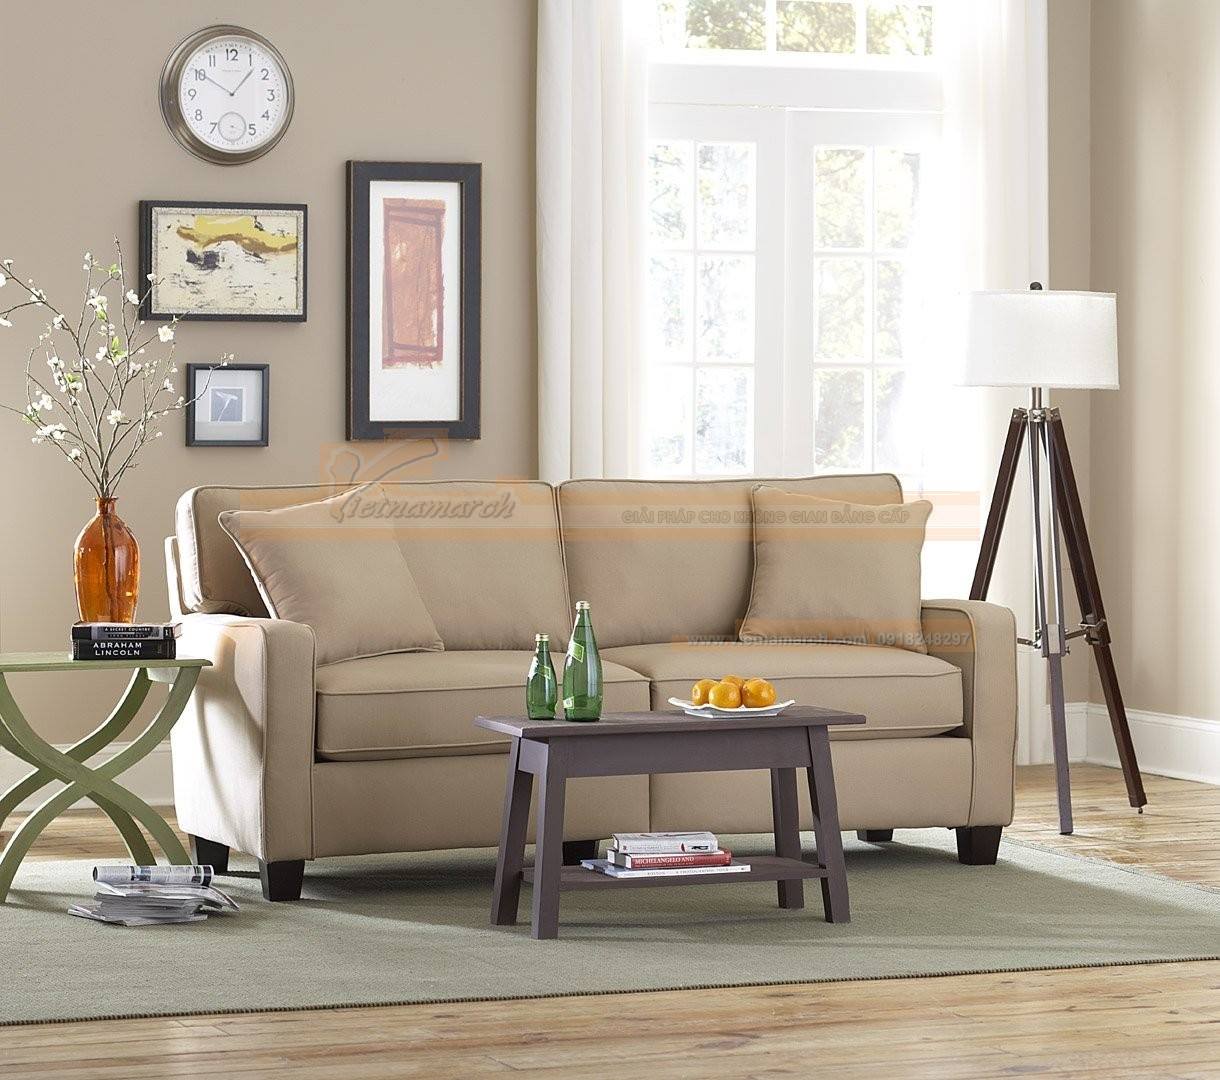 Lựa chọn bàn ghế sofa cho phòng khách nhỏ theo kết cấu căn phòng > Ghế sofa văng nhỏ gọn giúp tiết kiệm không gian